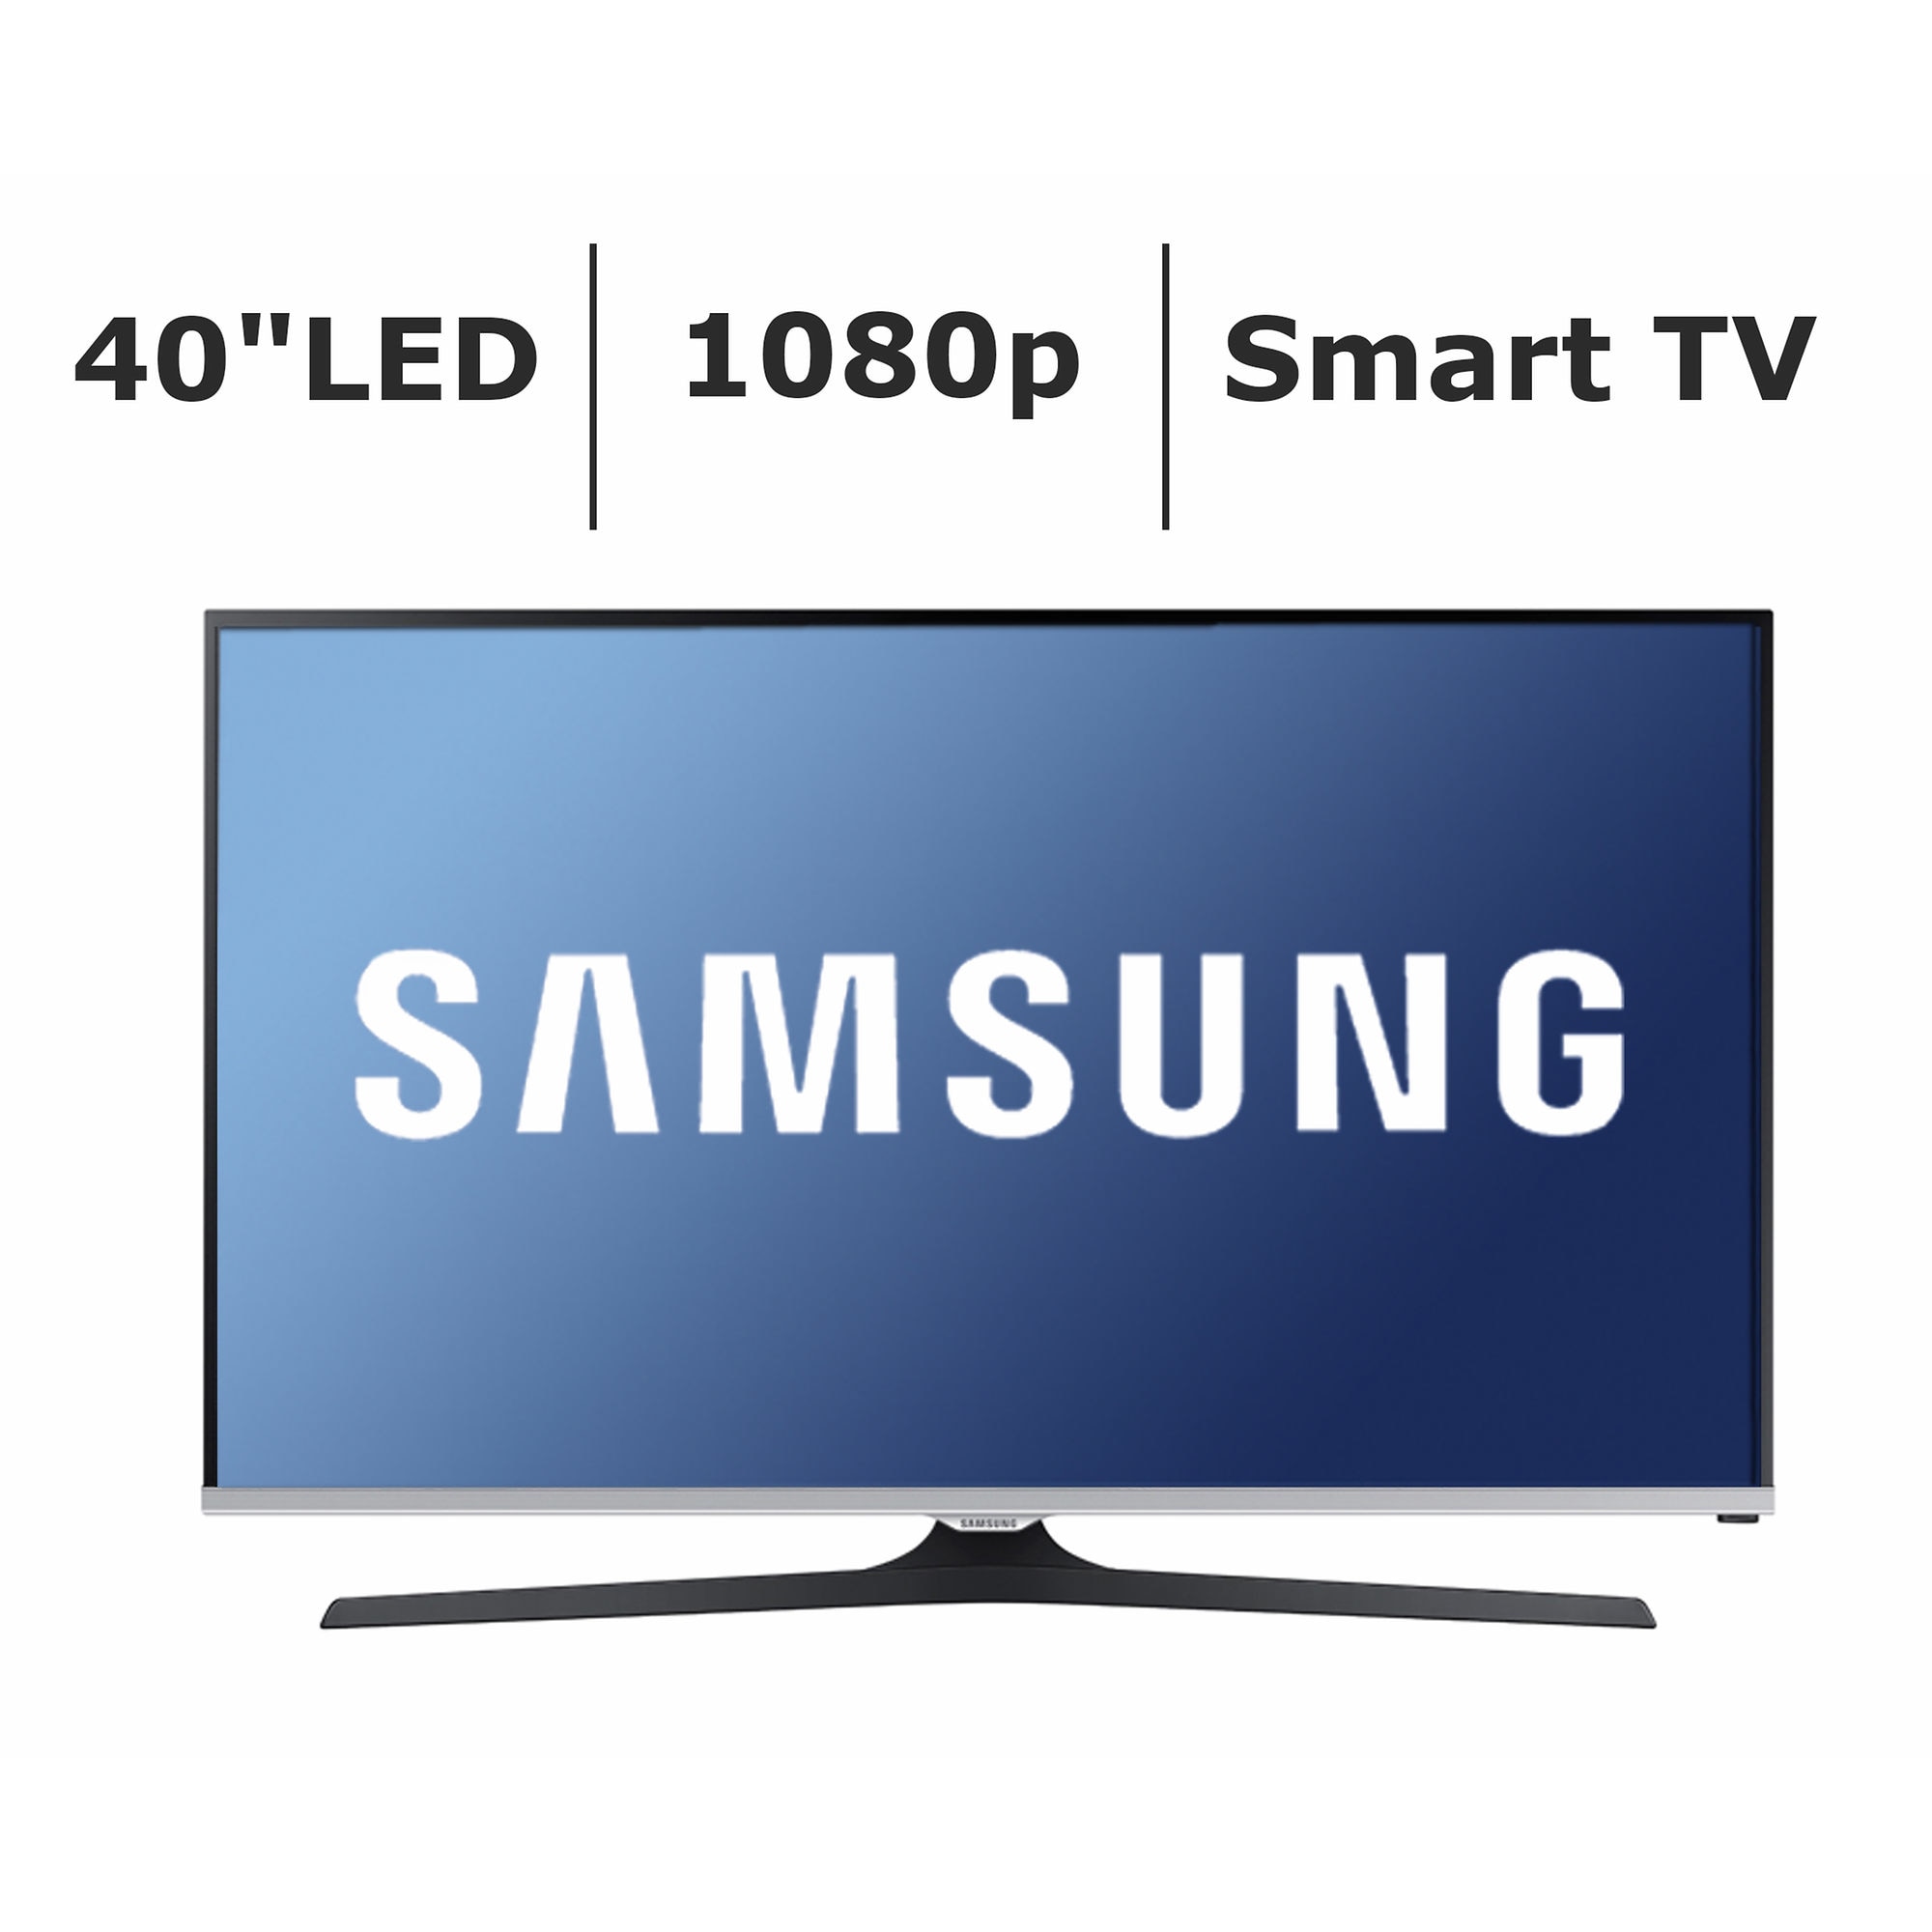 Samsung UN40J520D 40-inch 1080p Smart LED TV